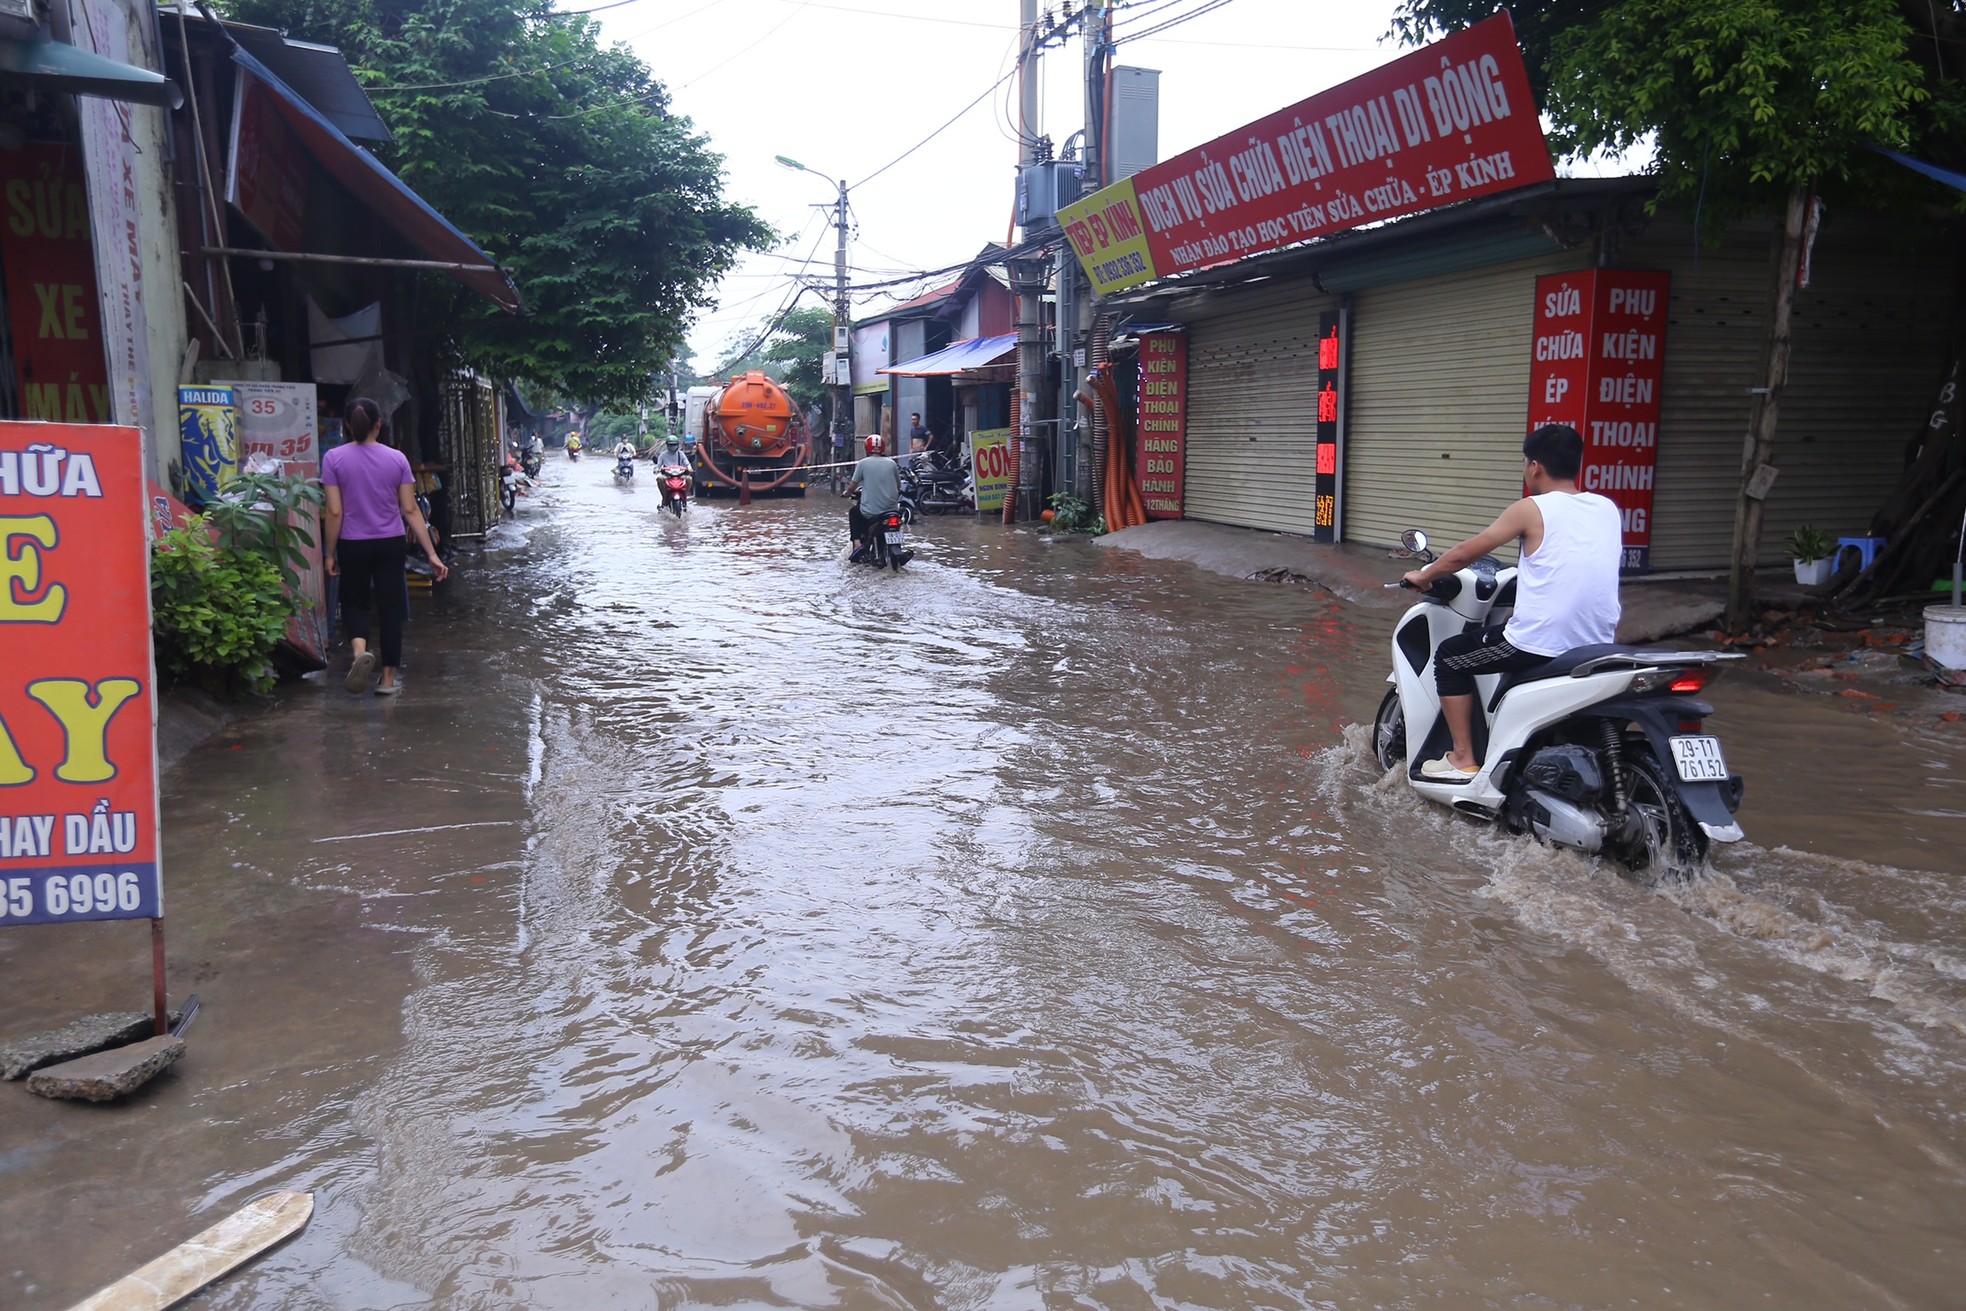 Một con phố ở Thủ đô vẫn chìm trong 'biển nước' sau một ngày mưa lớn - Ảnh 2.